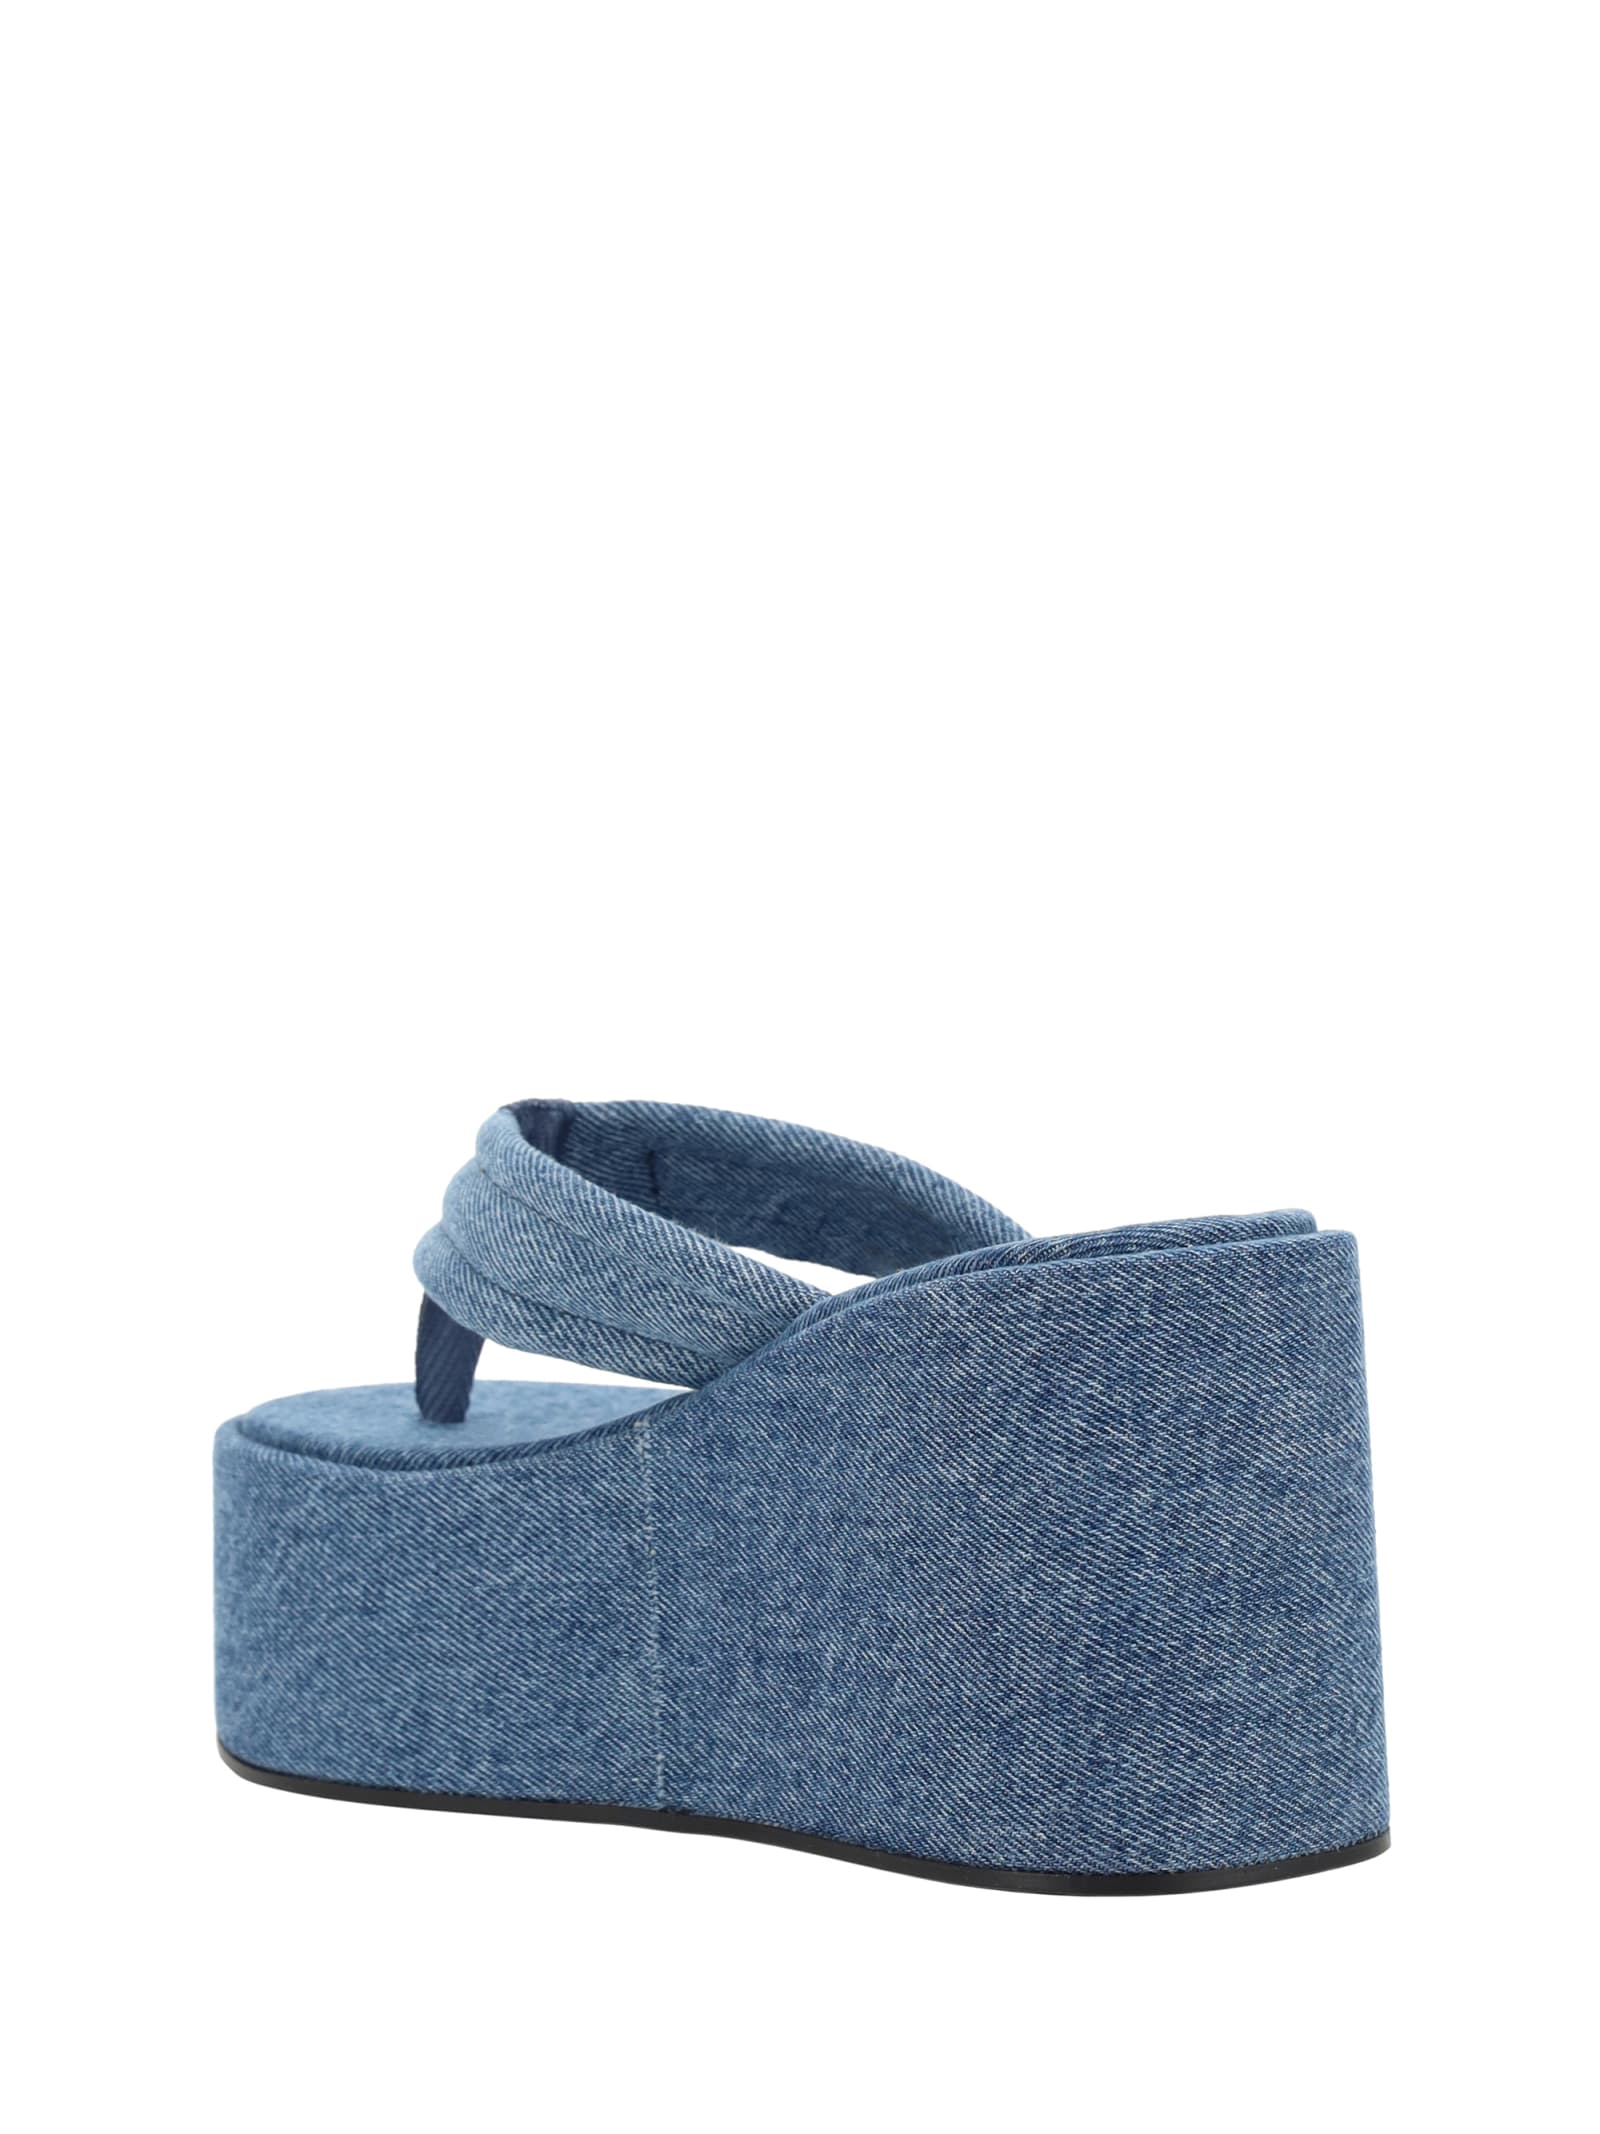 Shop Coperni Wedge Sandals In Washed Blue